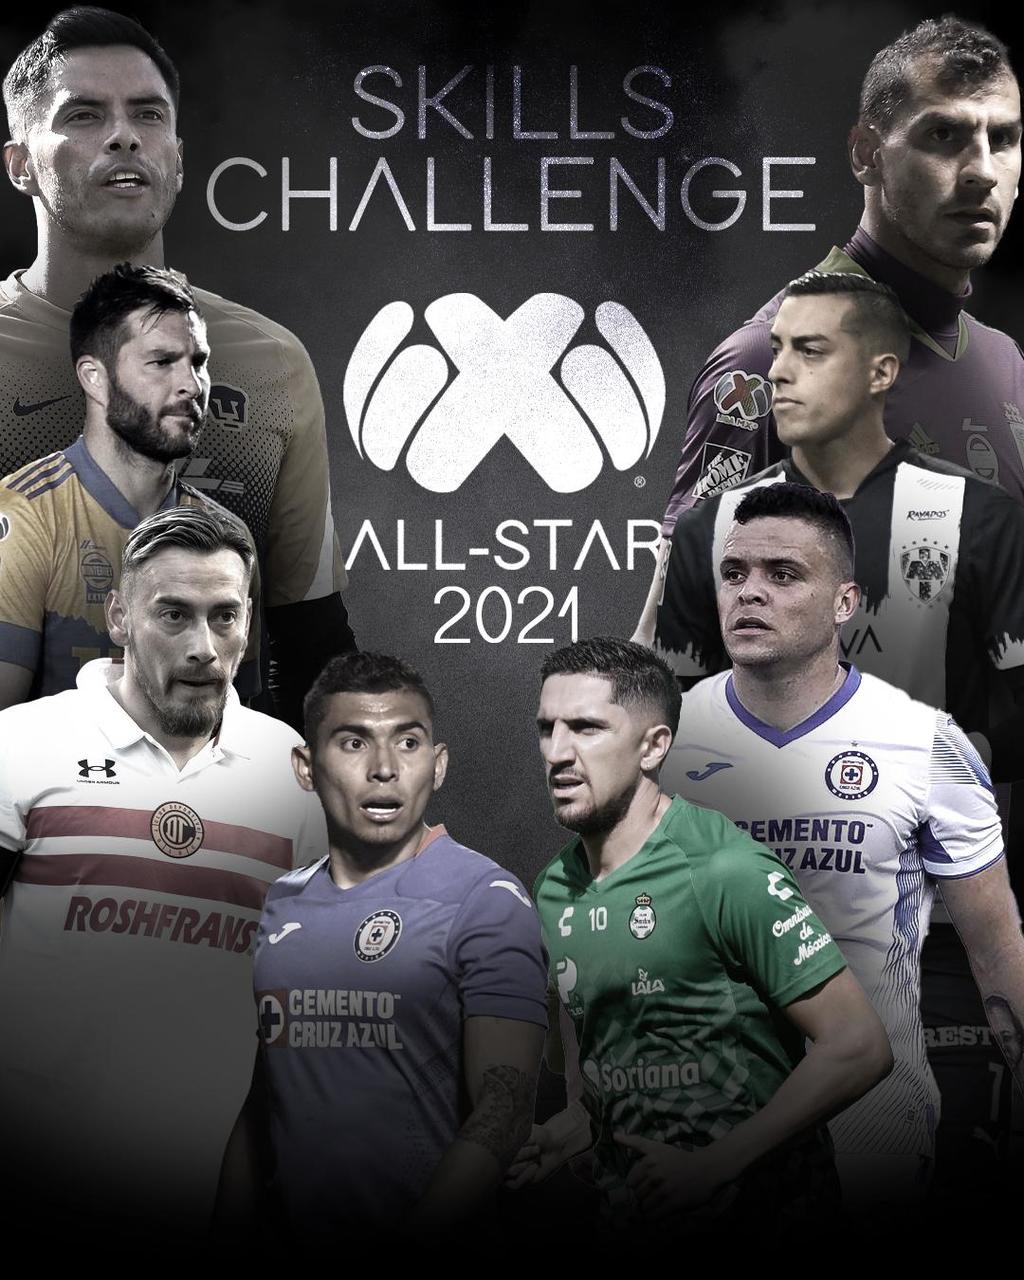 La Major League Soccer y Liga MX anunciaron sus selecciones estelares de ocho jugadores cada uno para enfrentarse en cinco habilidades del MLS All-Star Skills Challenge 2021, el martes 24 de agosto en el Banc of California Stadium en Los Ángeles.
